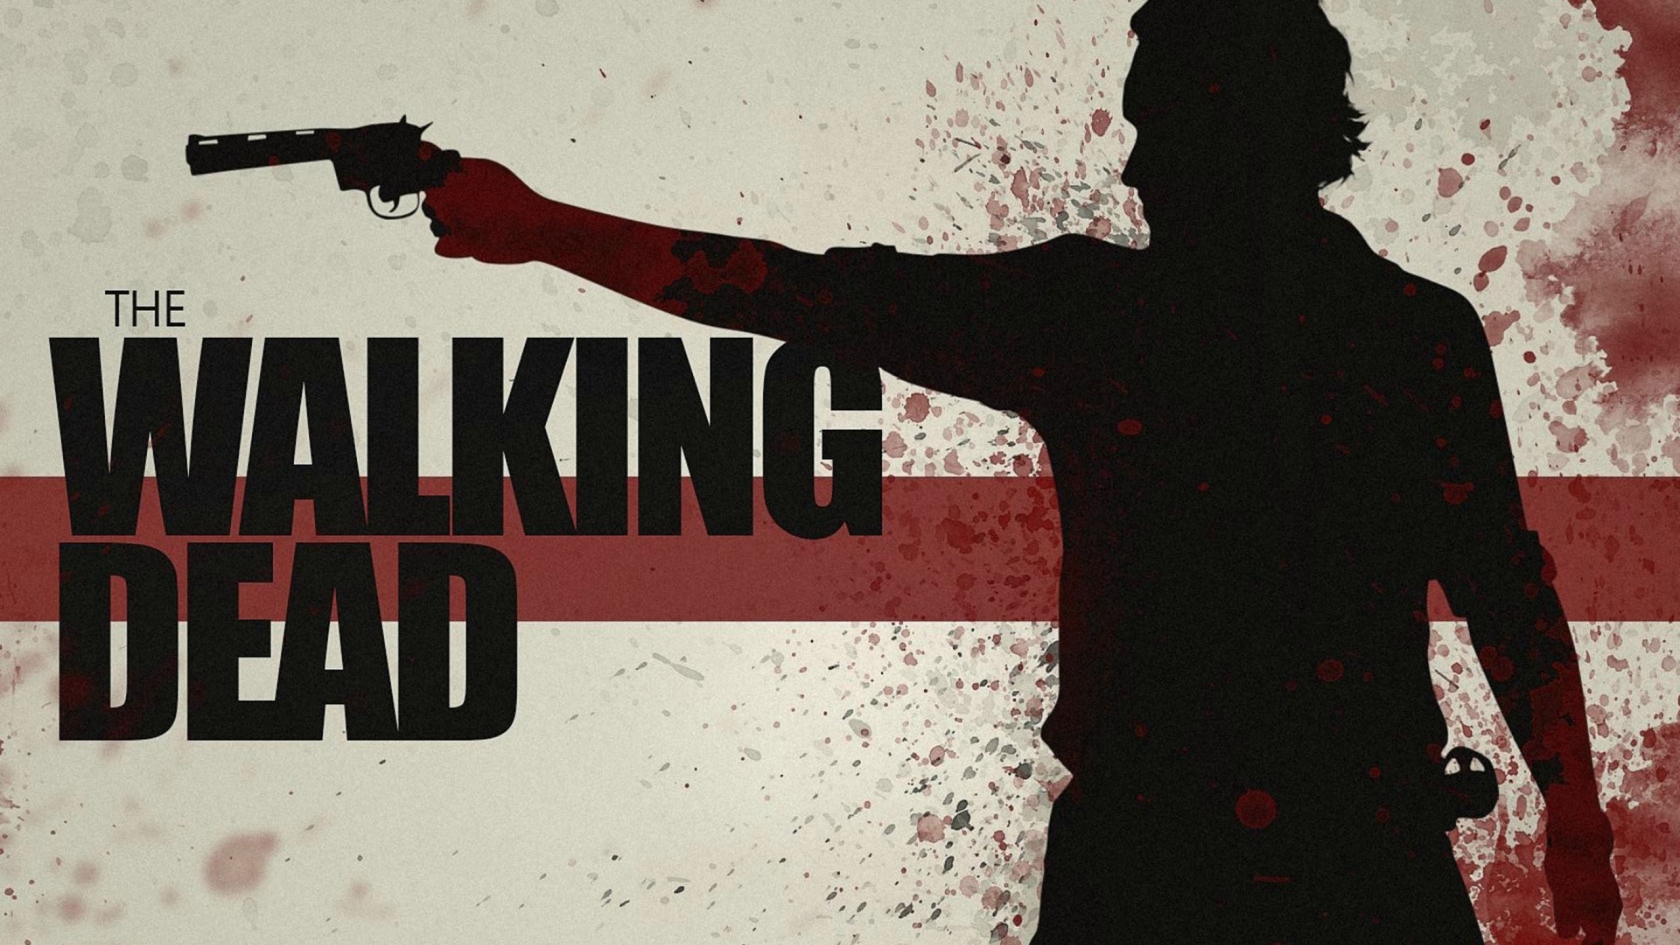 The Walking Dead Gun Poster for 1680 x 945 HDTV resolution